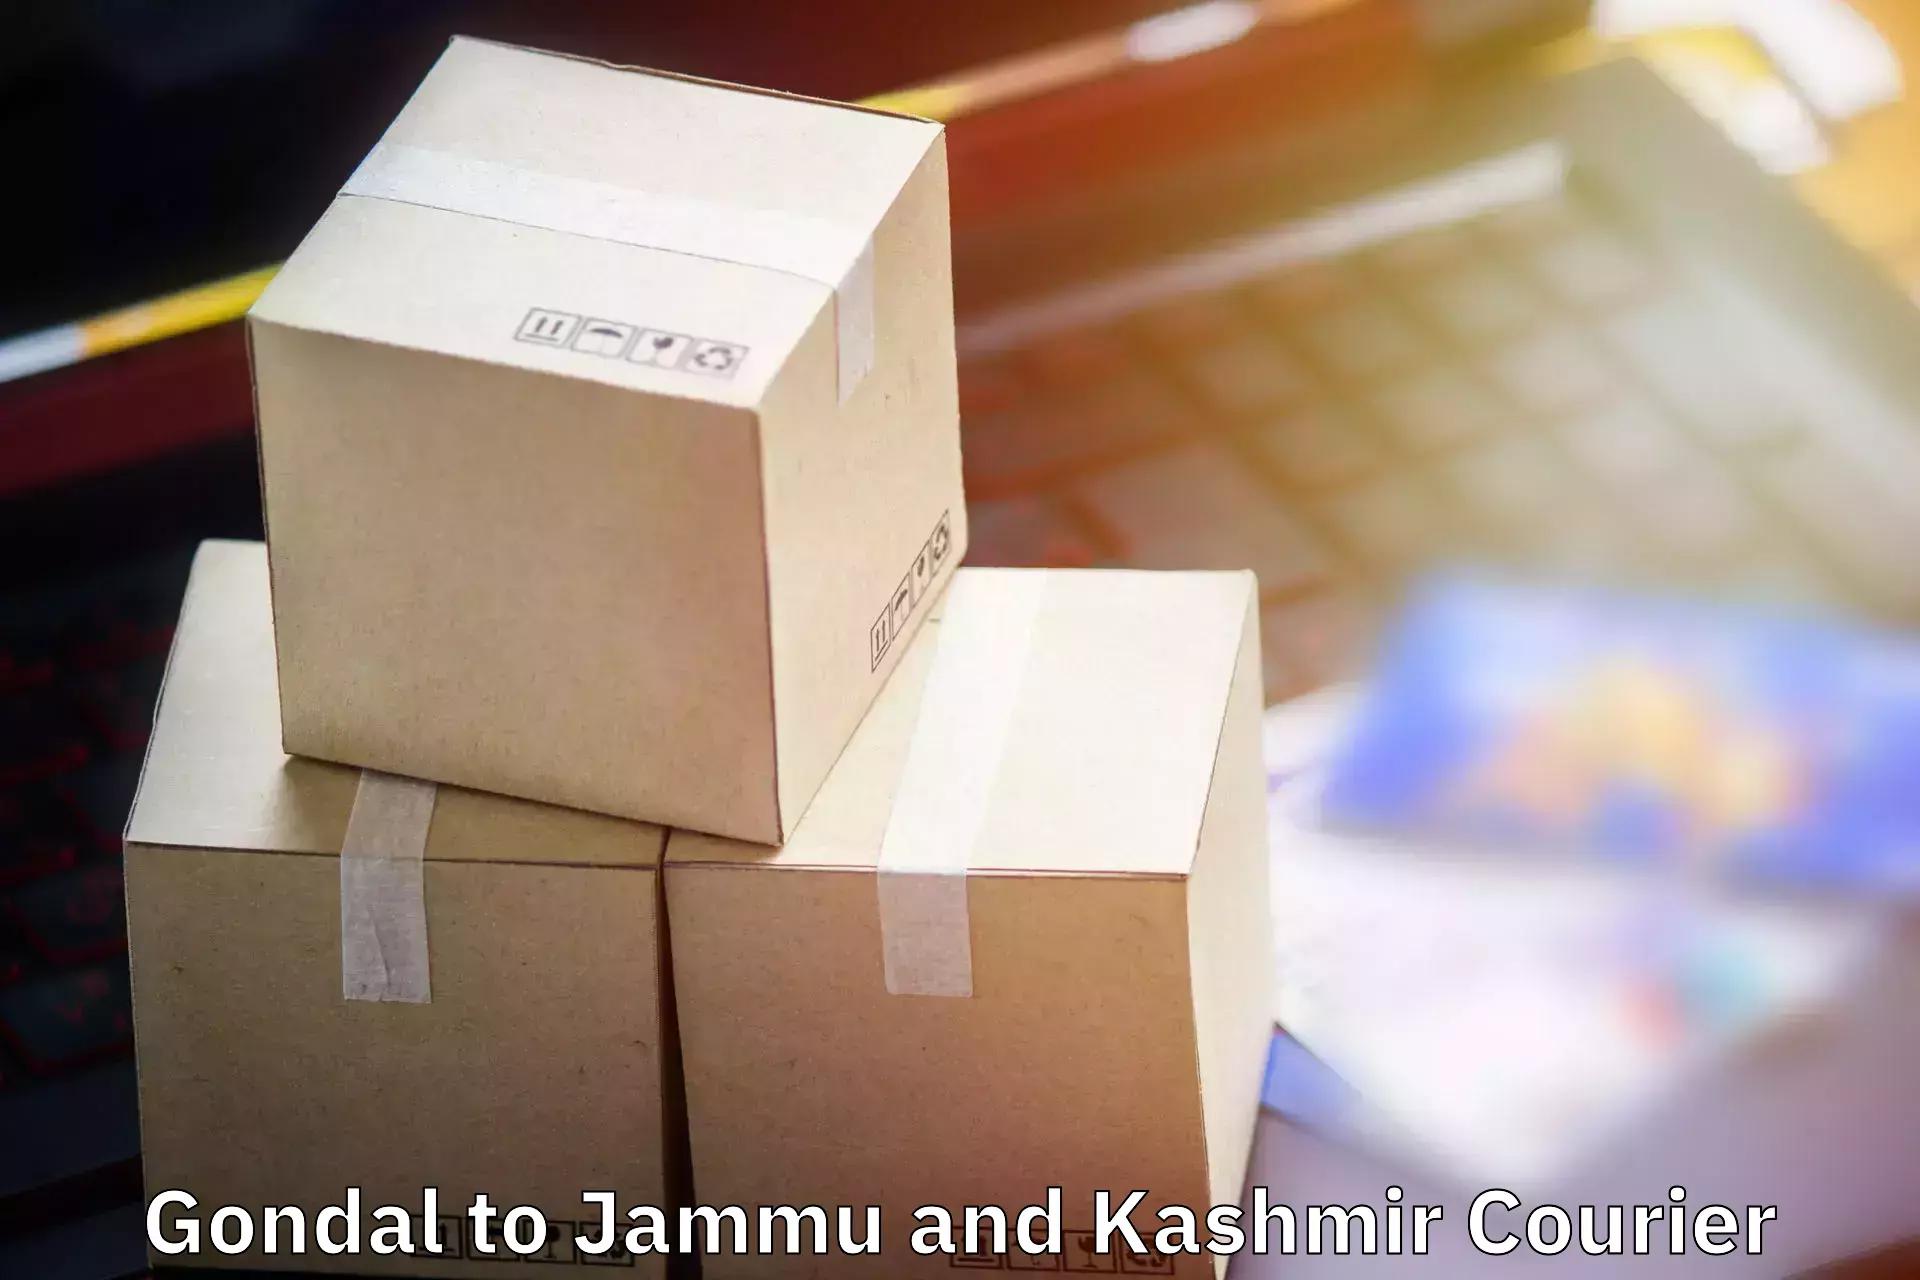 Baggage delivery optimization in Gondal to Srinagar Kashmir